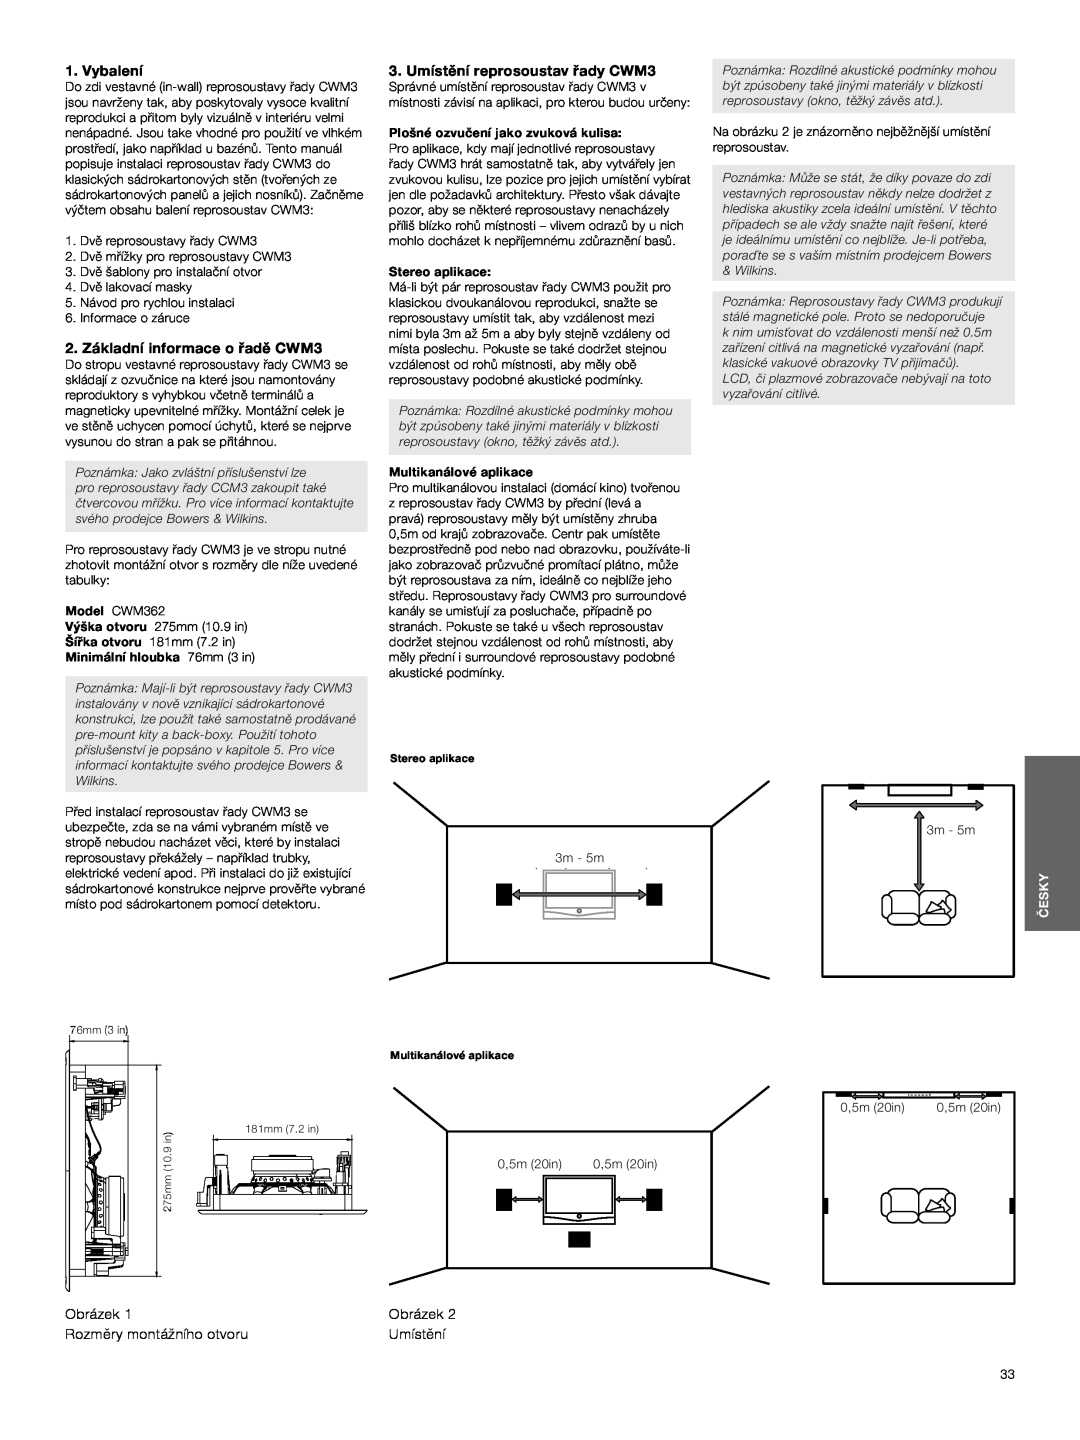 Bowers & Wilkins manual Vybalení, 2. Základní informace o řadě CWM3, 3.Umístění reprosoustav řady CWM3, 10 ft, 5m 16.5ft 